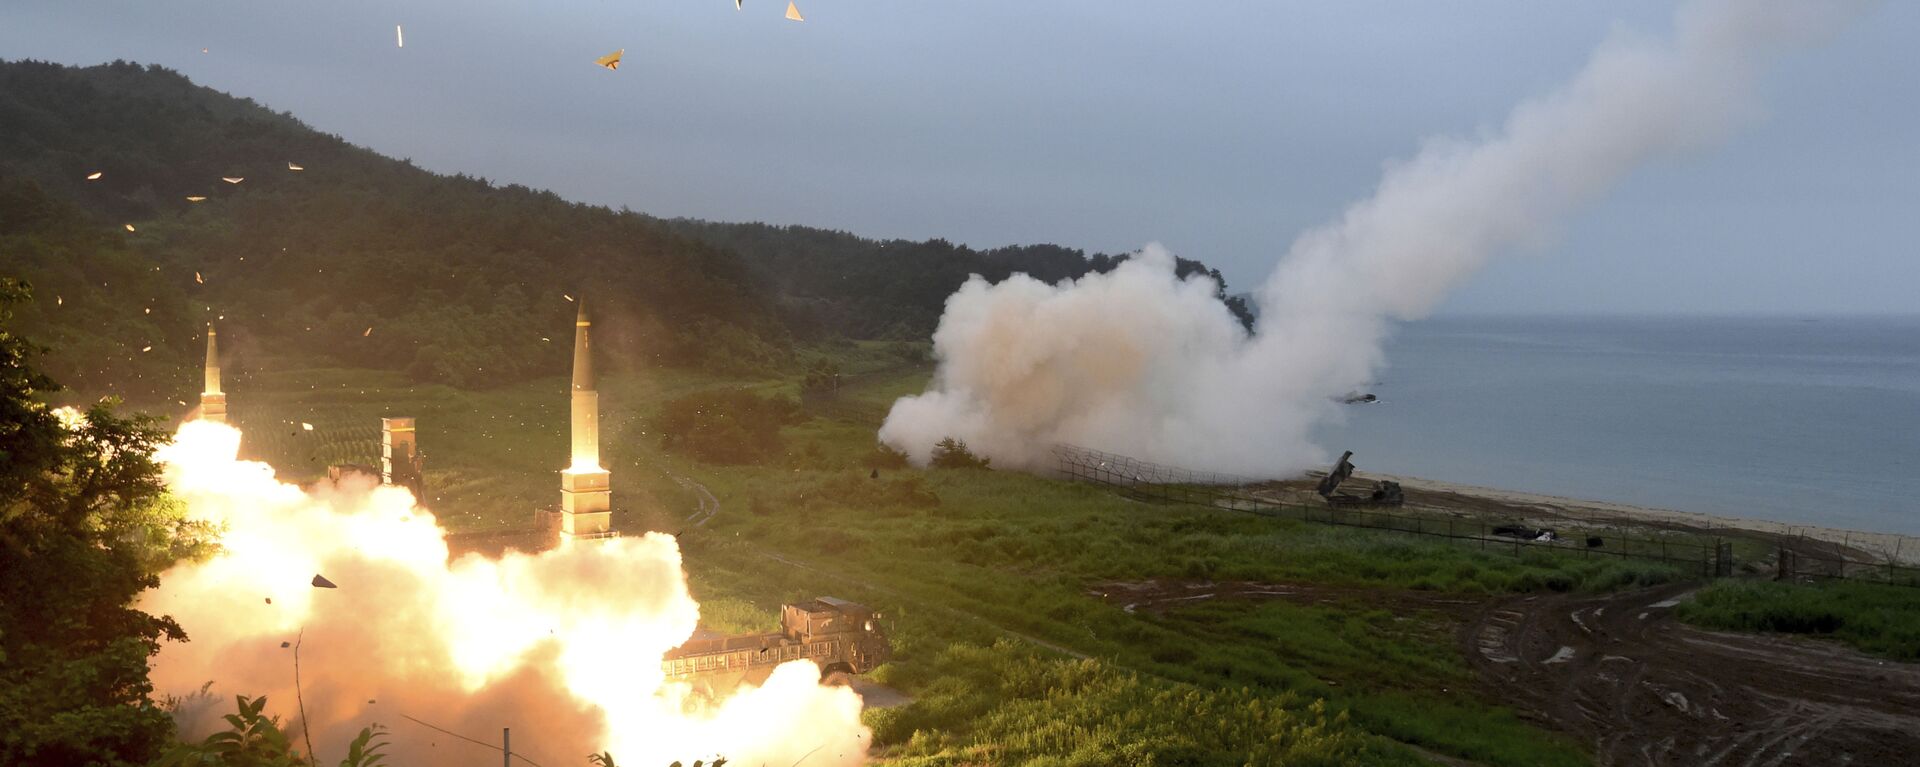 Lanzamiento de misiles durante un ejercicio militar combinado de Corea del Sur y EEUU, el 29 de julio de 2017 (Archivo). - Sputnik Mundo, 1920, 11.03.2021